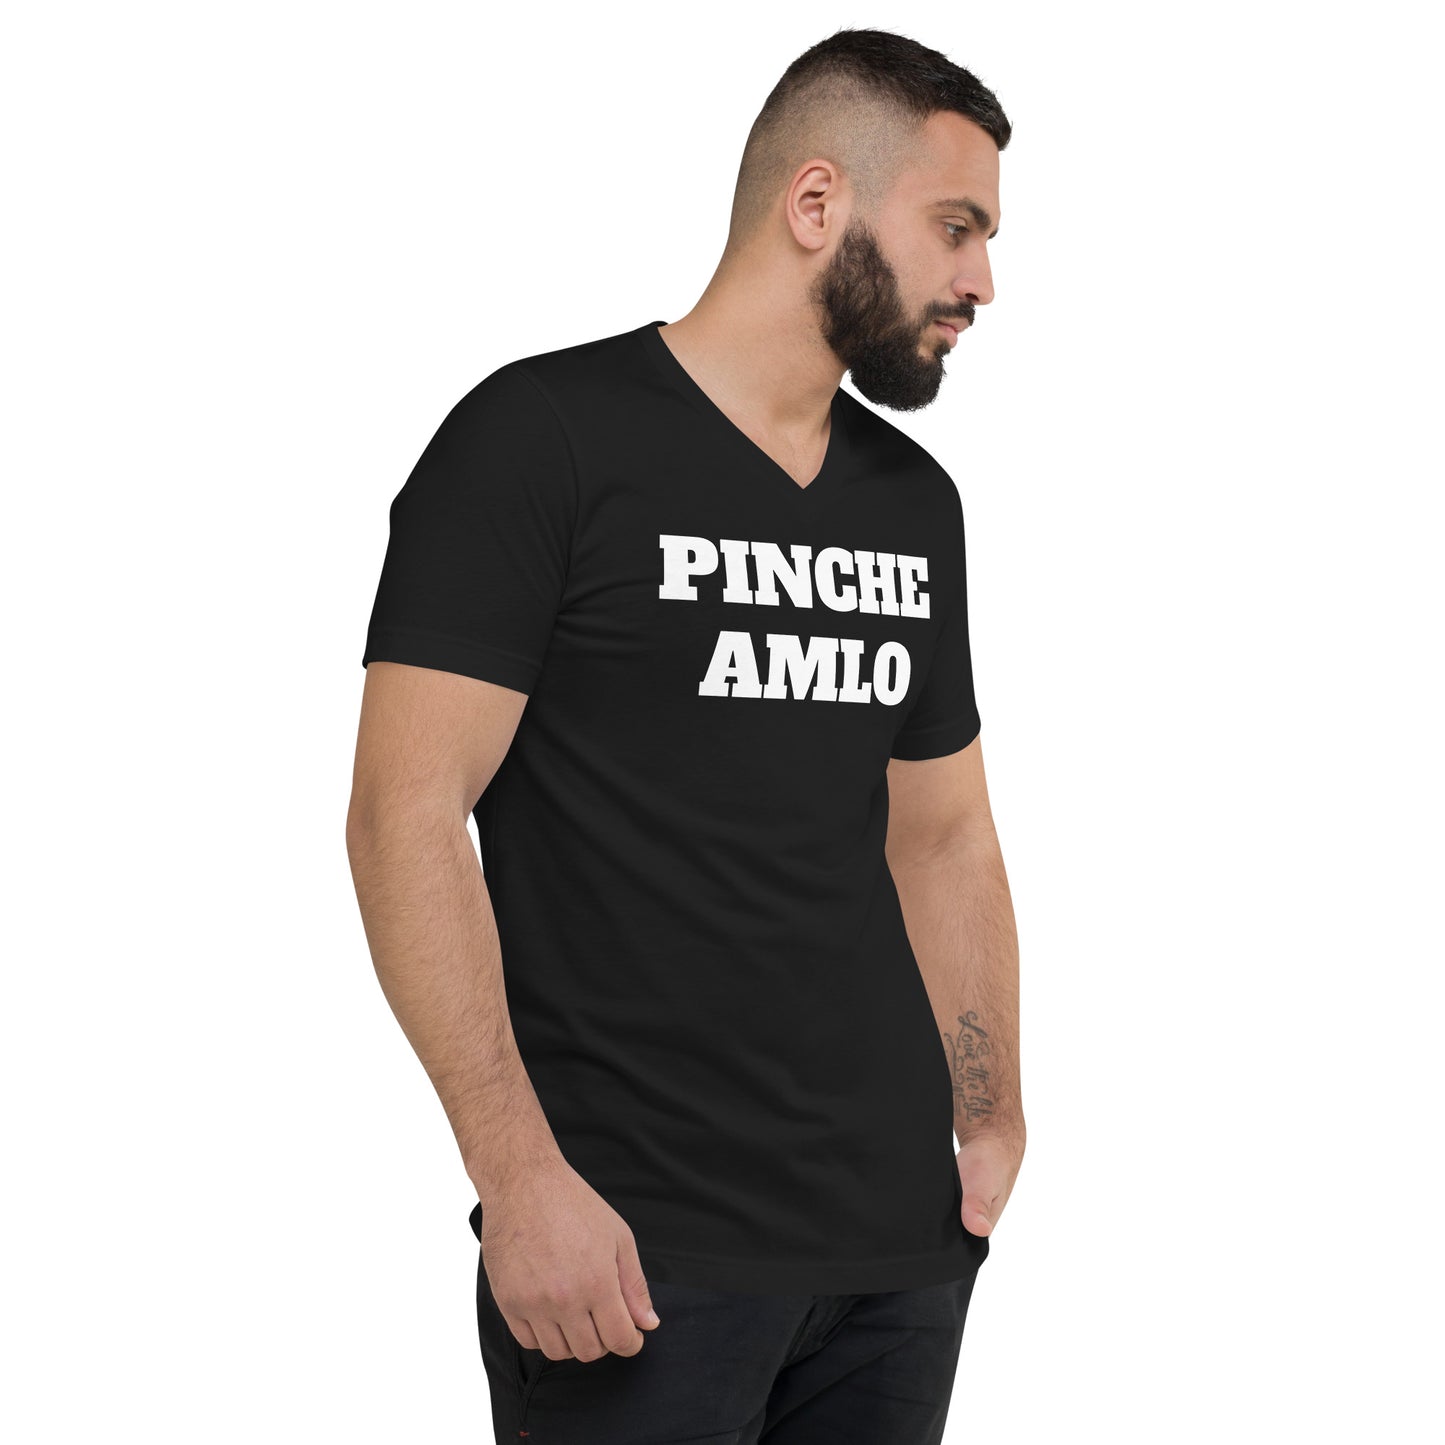 T-shirt "Pinche AMLO"